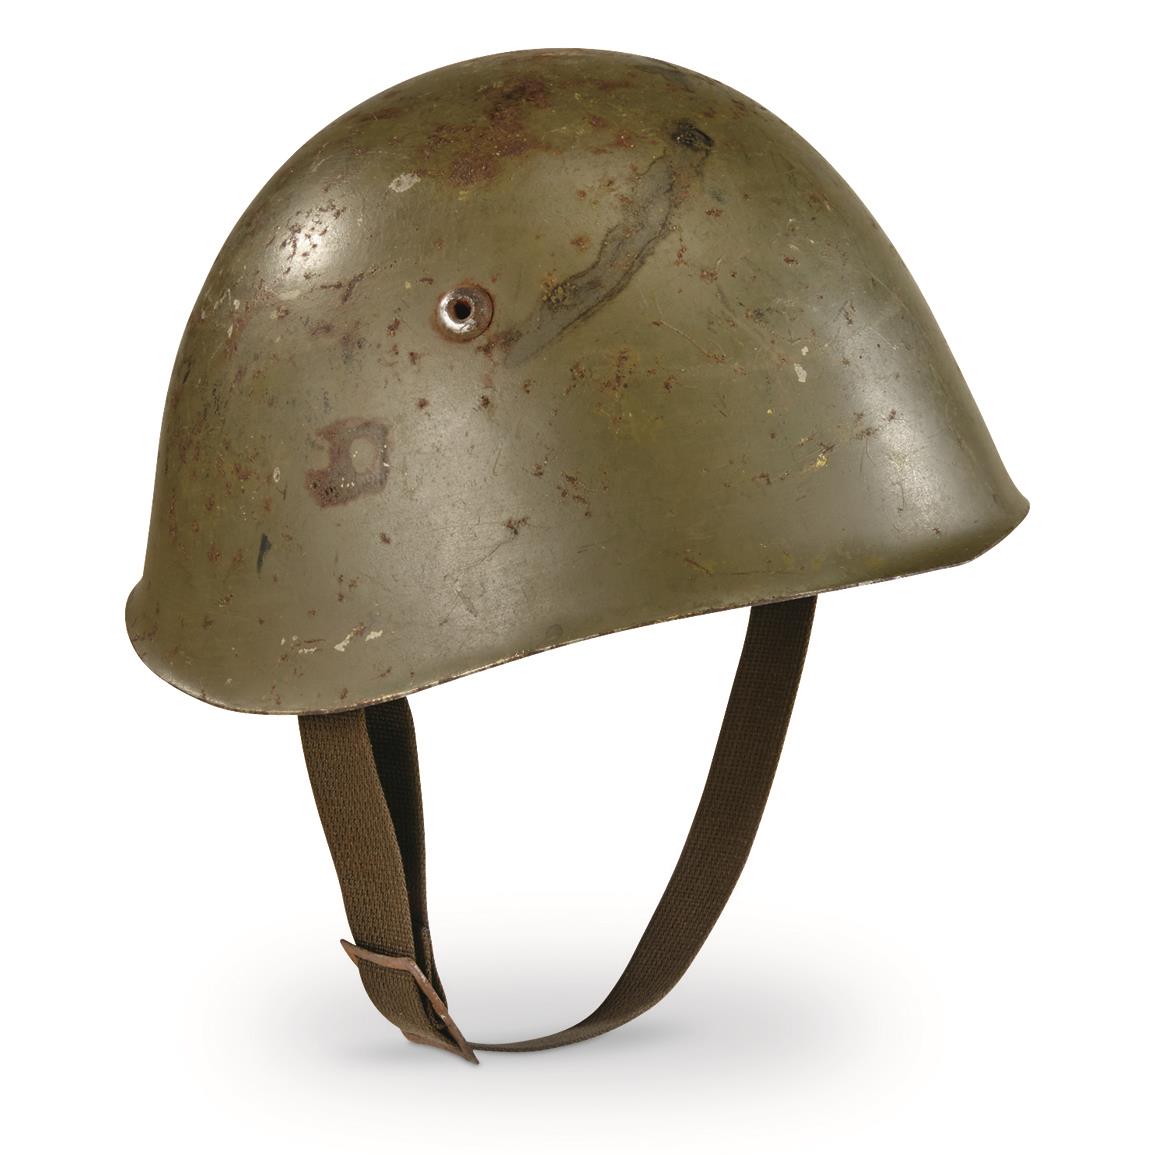 Italian Military Surplus WWII M33 Steel Helmet, Used